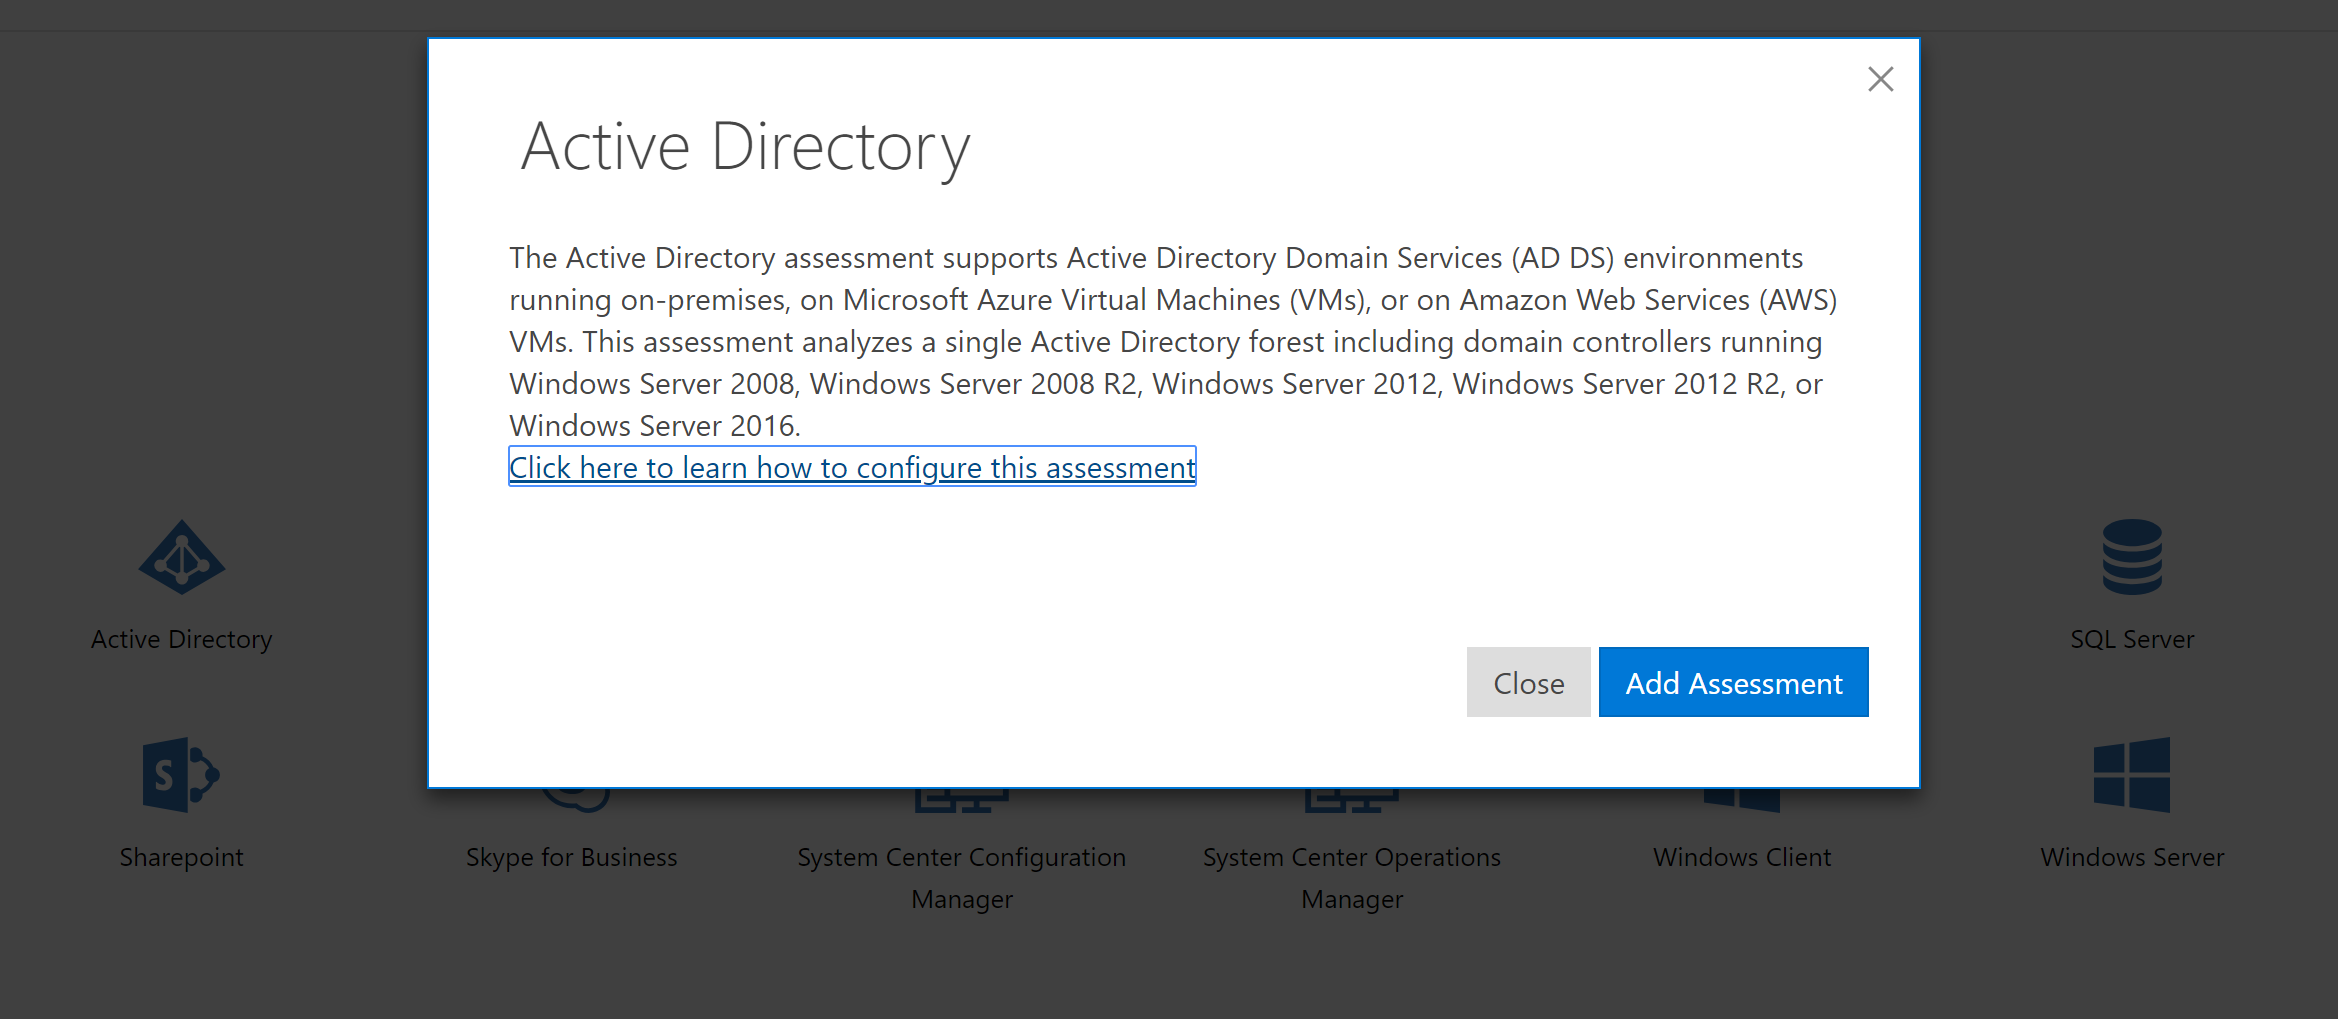 Descrição da Avaliação do Active Directory para dar suporte a Ambientes de serviço do Entra ID.